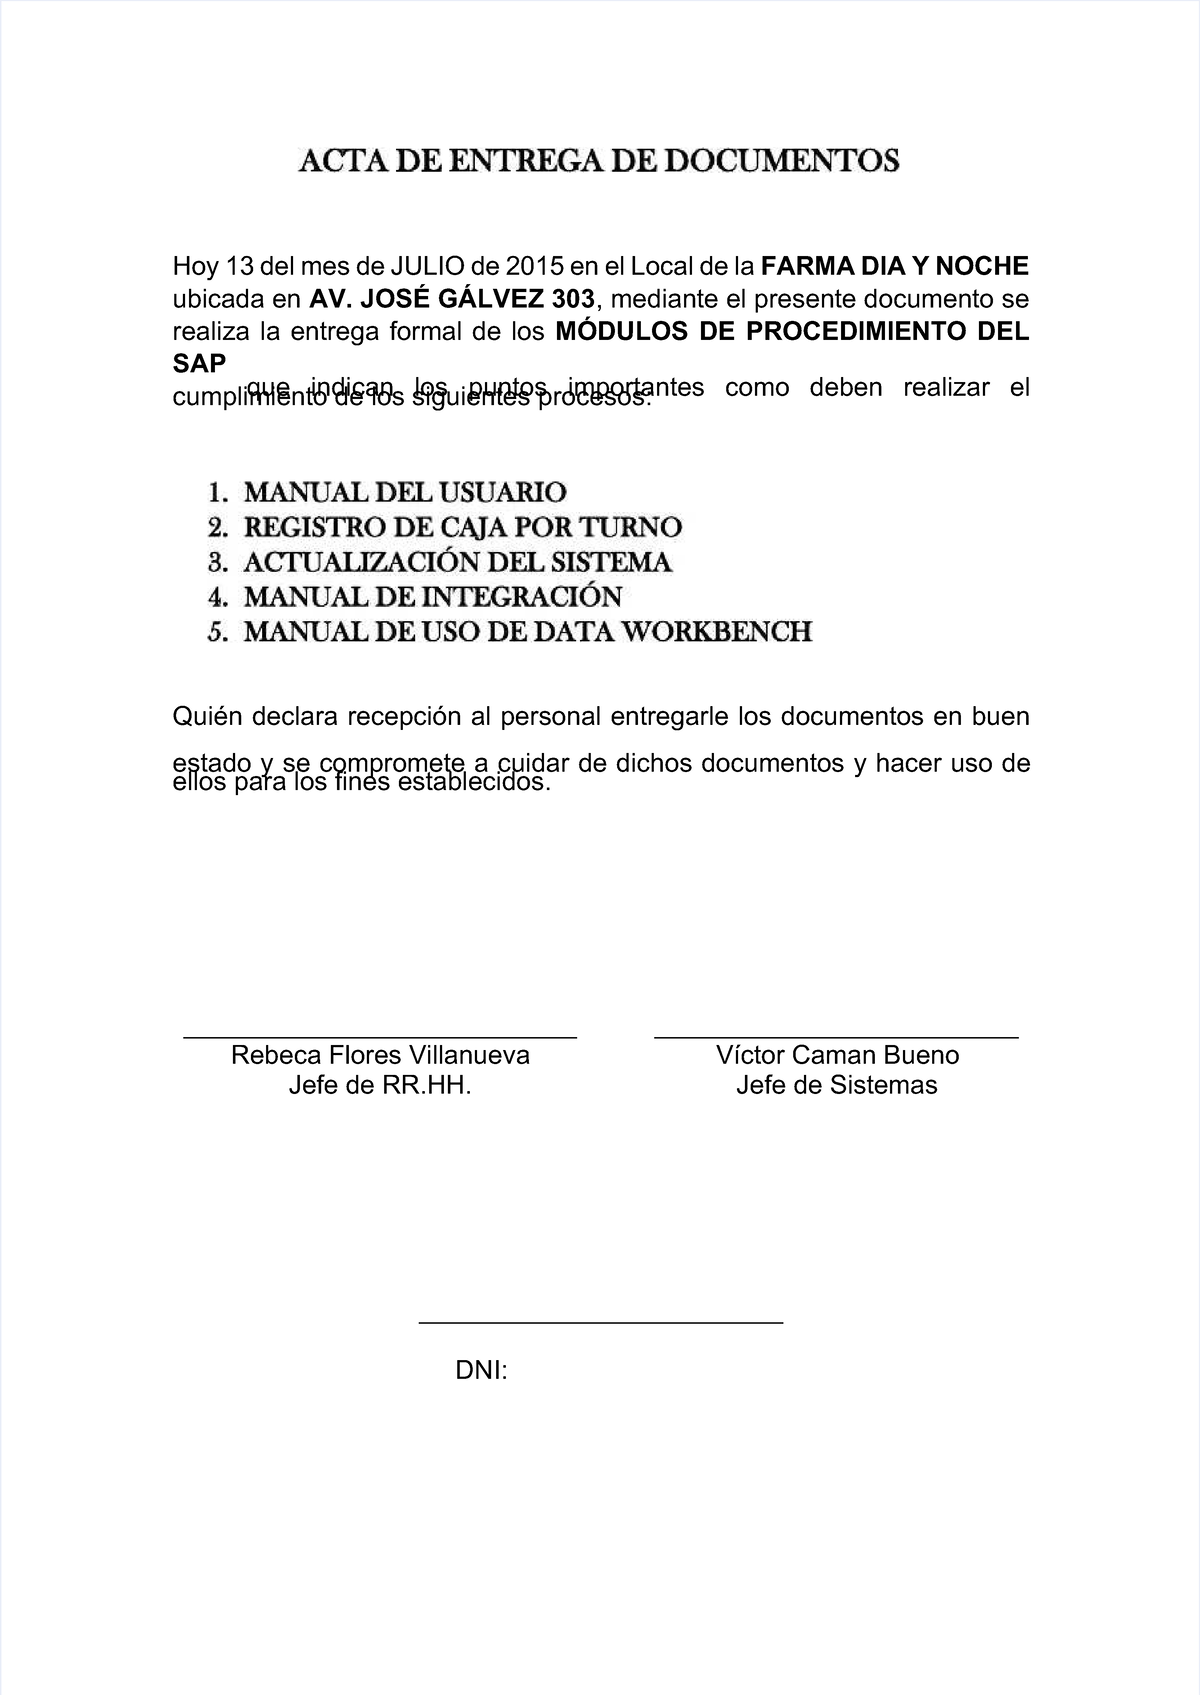 Pdf Acta De Entrega De Documentos Compress Para La Recepcion Y Entre De